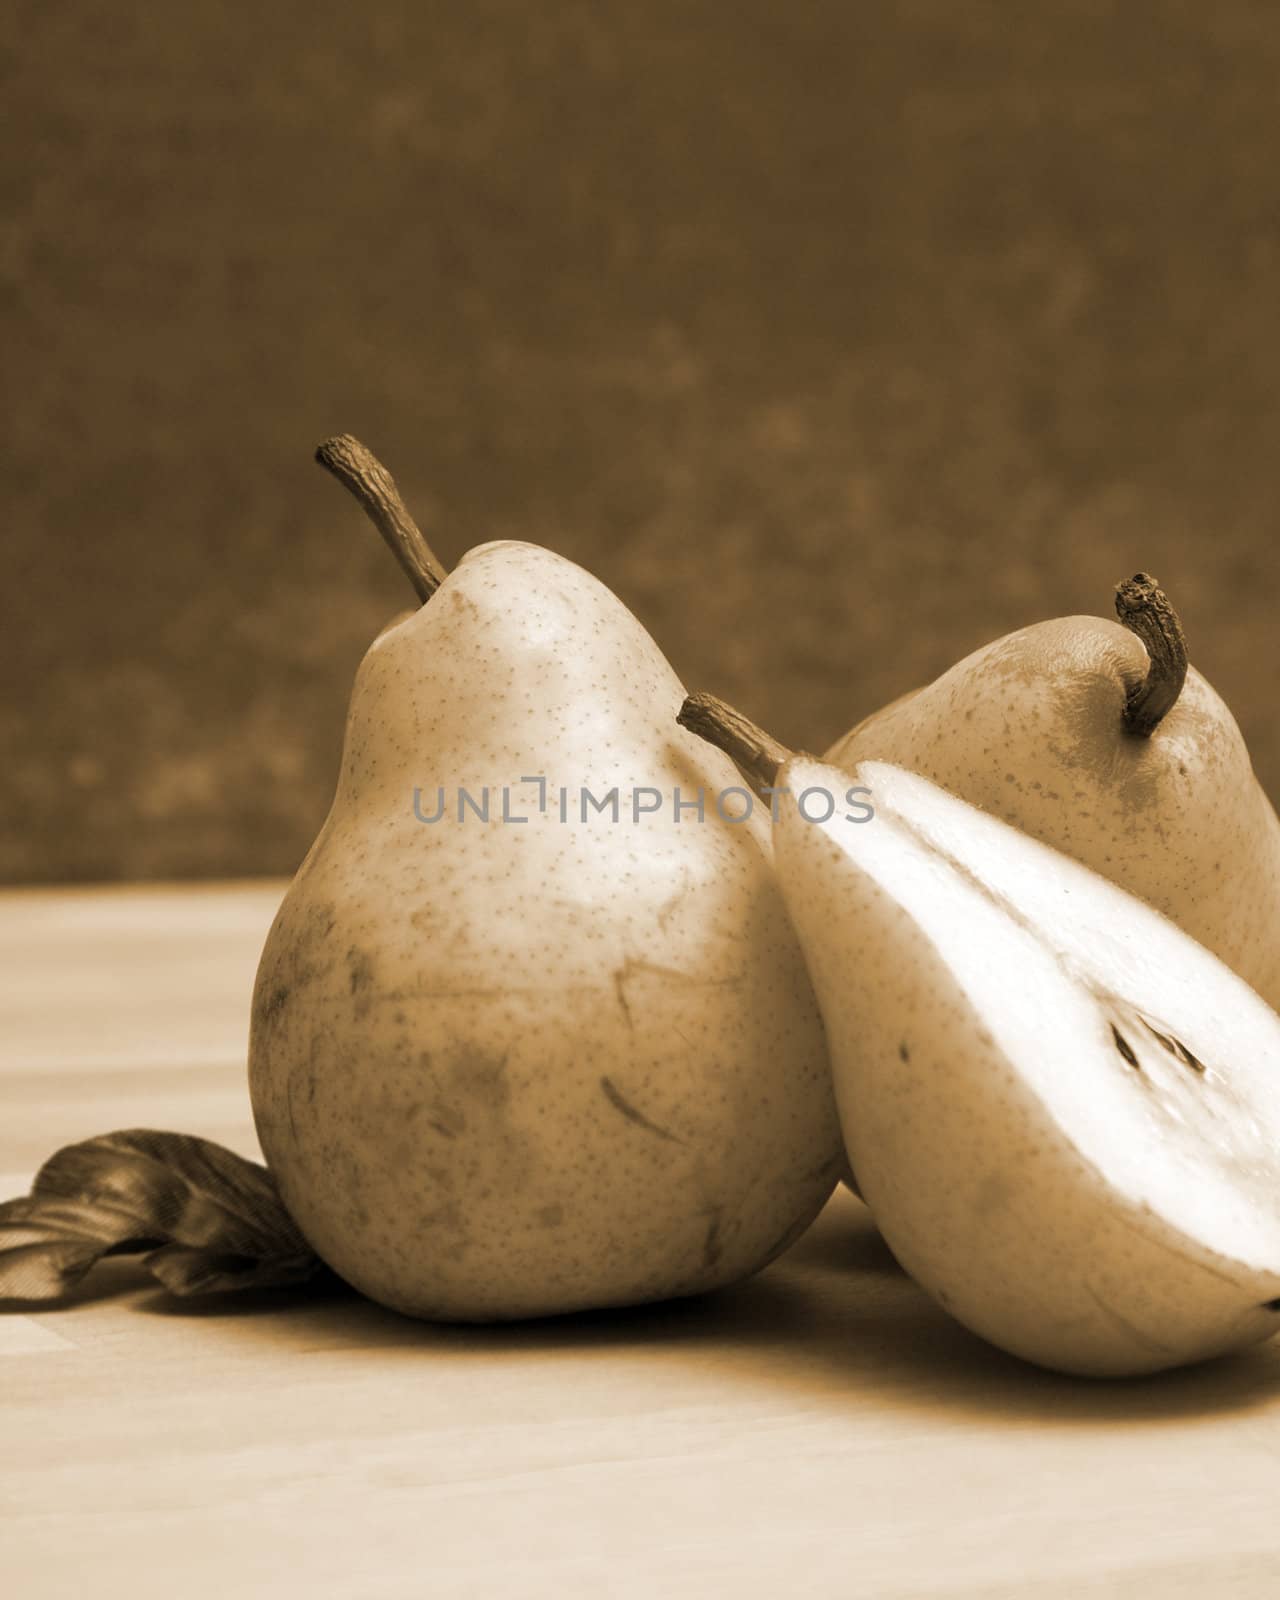 A few pears in a still life scene.